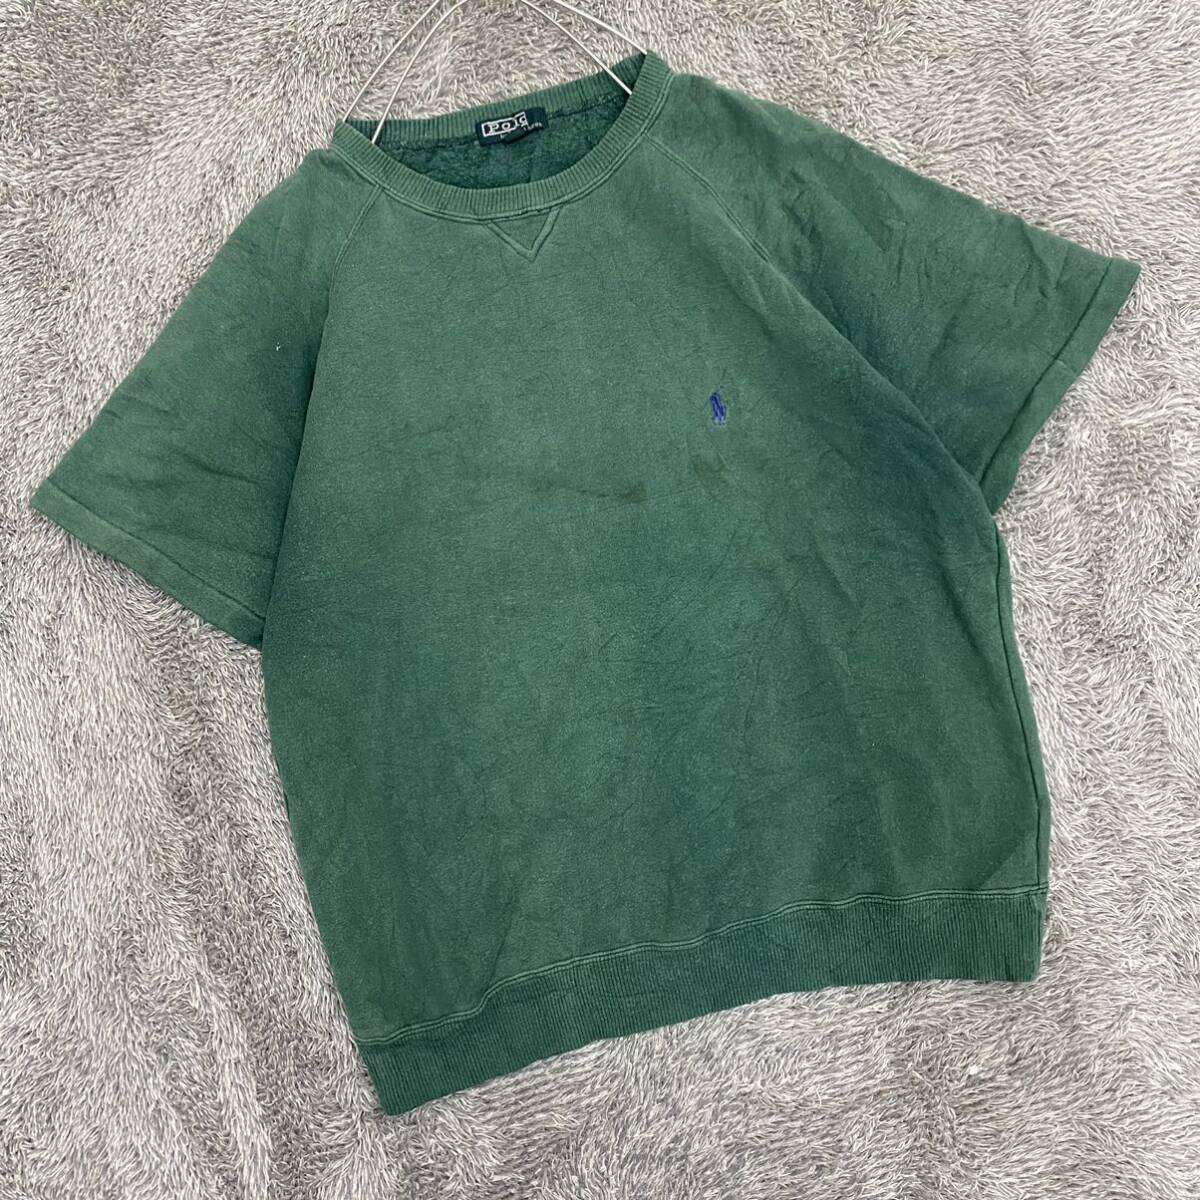 POLO RALPH LAUREN ラルフローレン Tシャツ 半袖カットソー ラグラン サイズ170 グリーン 緑 メンズ トップス 最落なし （G19）_画像1